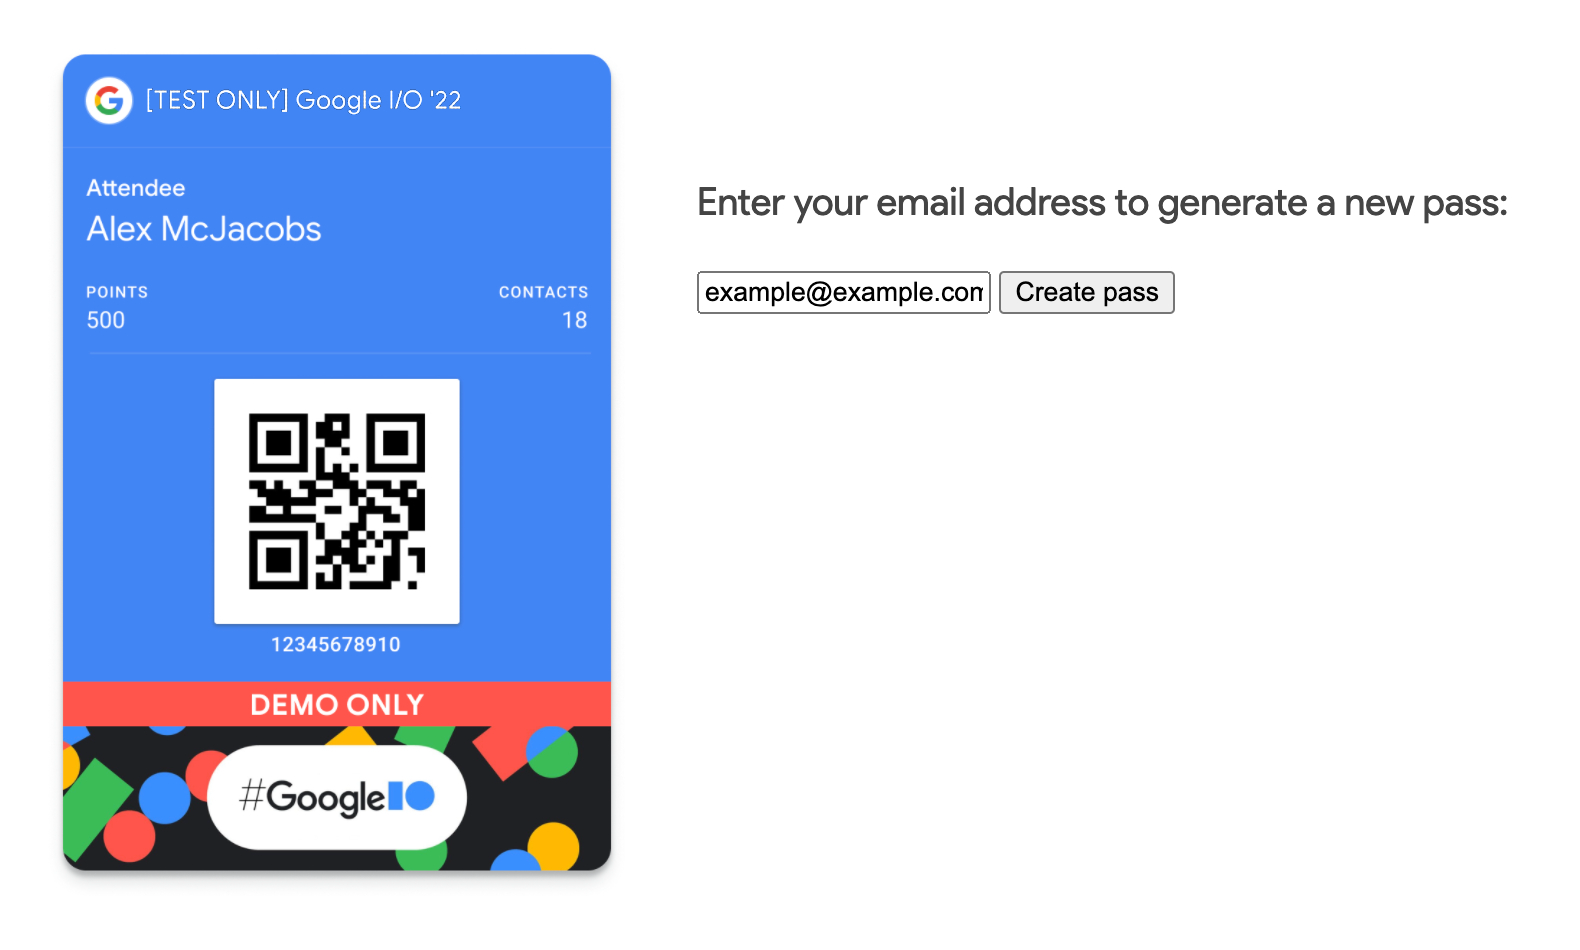 E-posta adresi girebileceğiniz bir alan ve Kart oluştur düğmesi içeren örnek bir web uygulaması